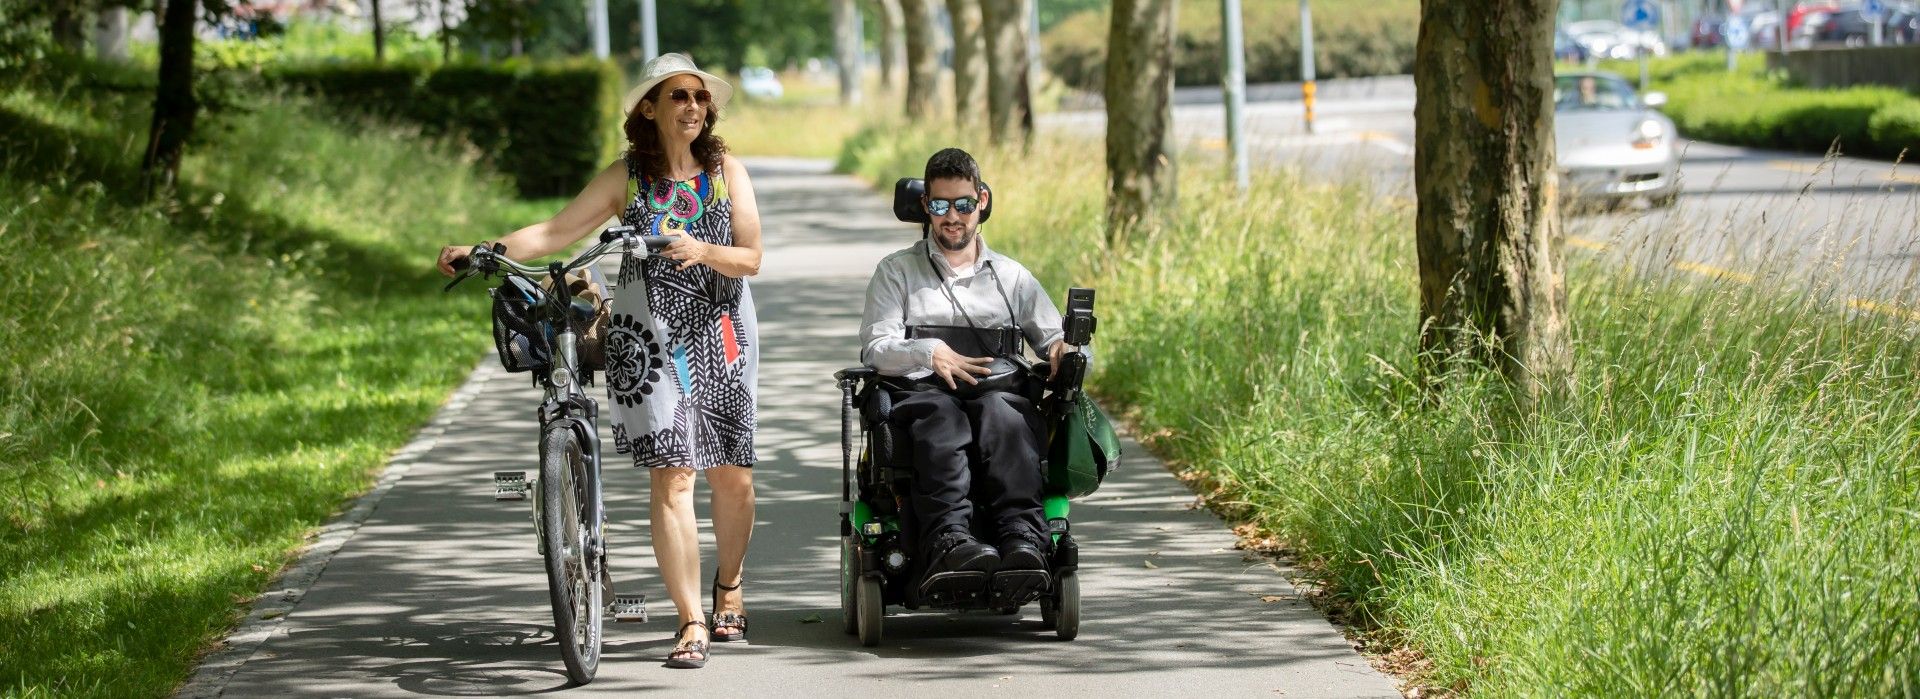 Ein junger Mann im Rollstuhl wird von einer Frau mit Velo begleitet